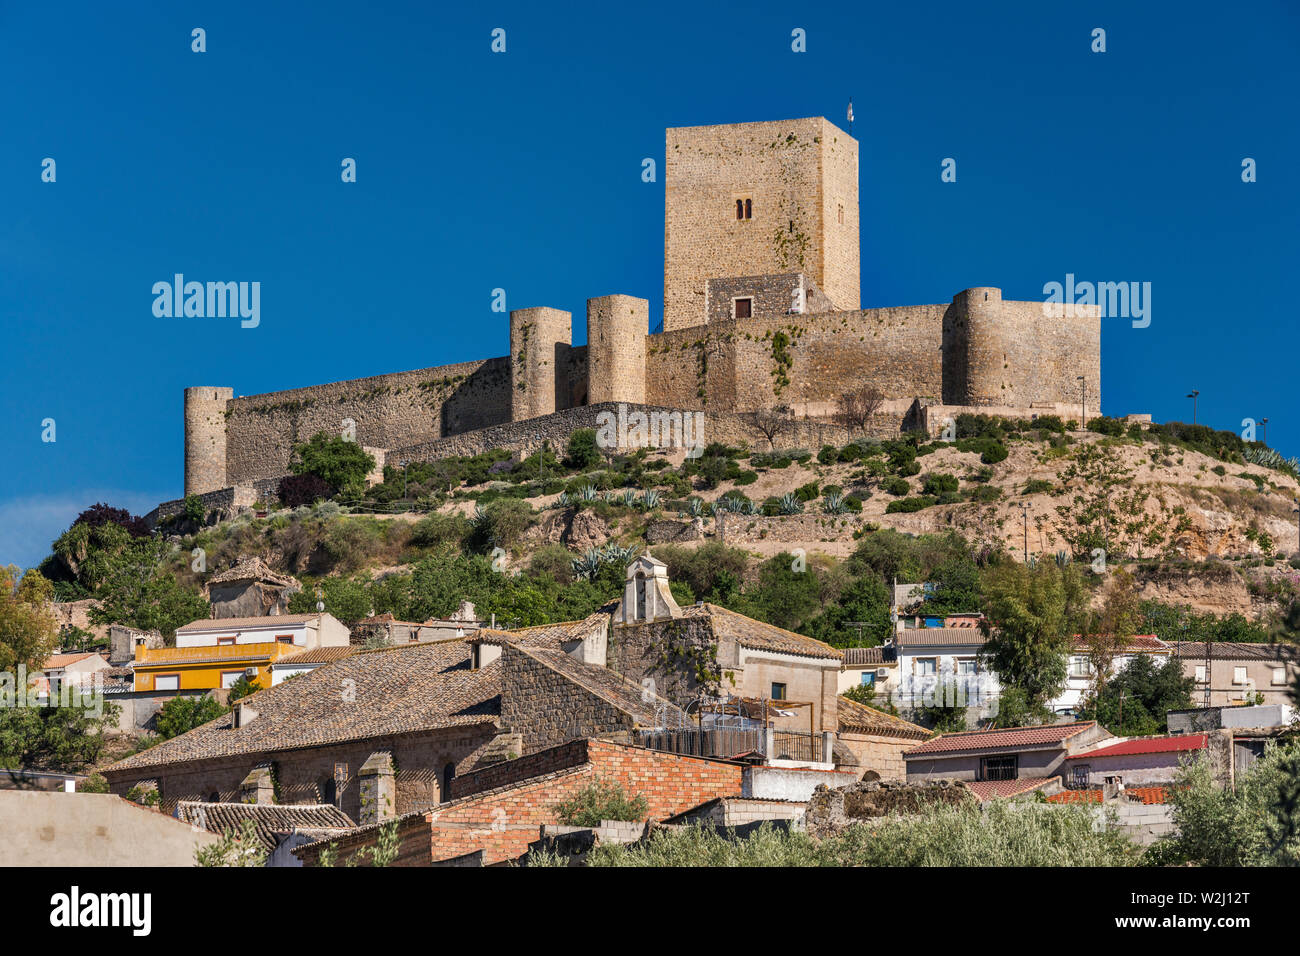 Castillo de Alcaudete, moorish castle, 11th-14th century on hill above town of Alcaudete, Jaen province, Andalusia, Spain Stock Photo